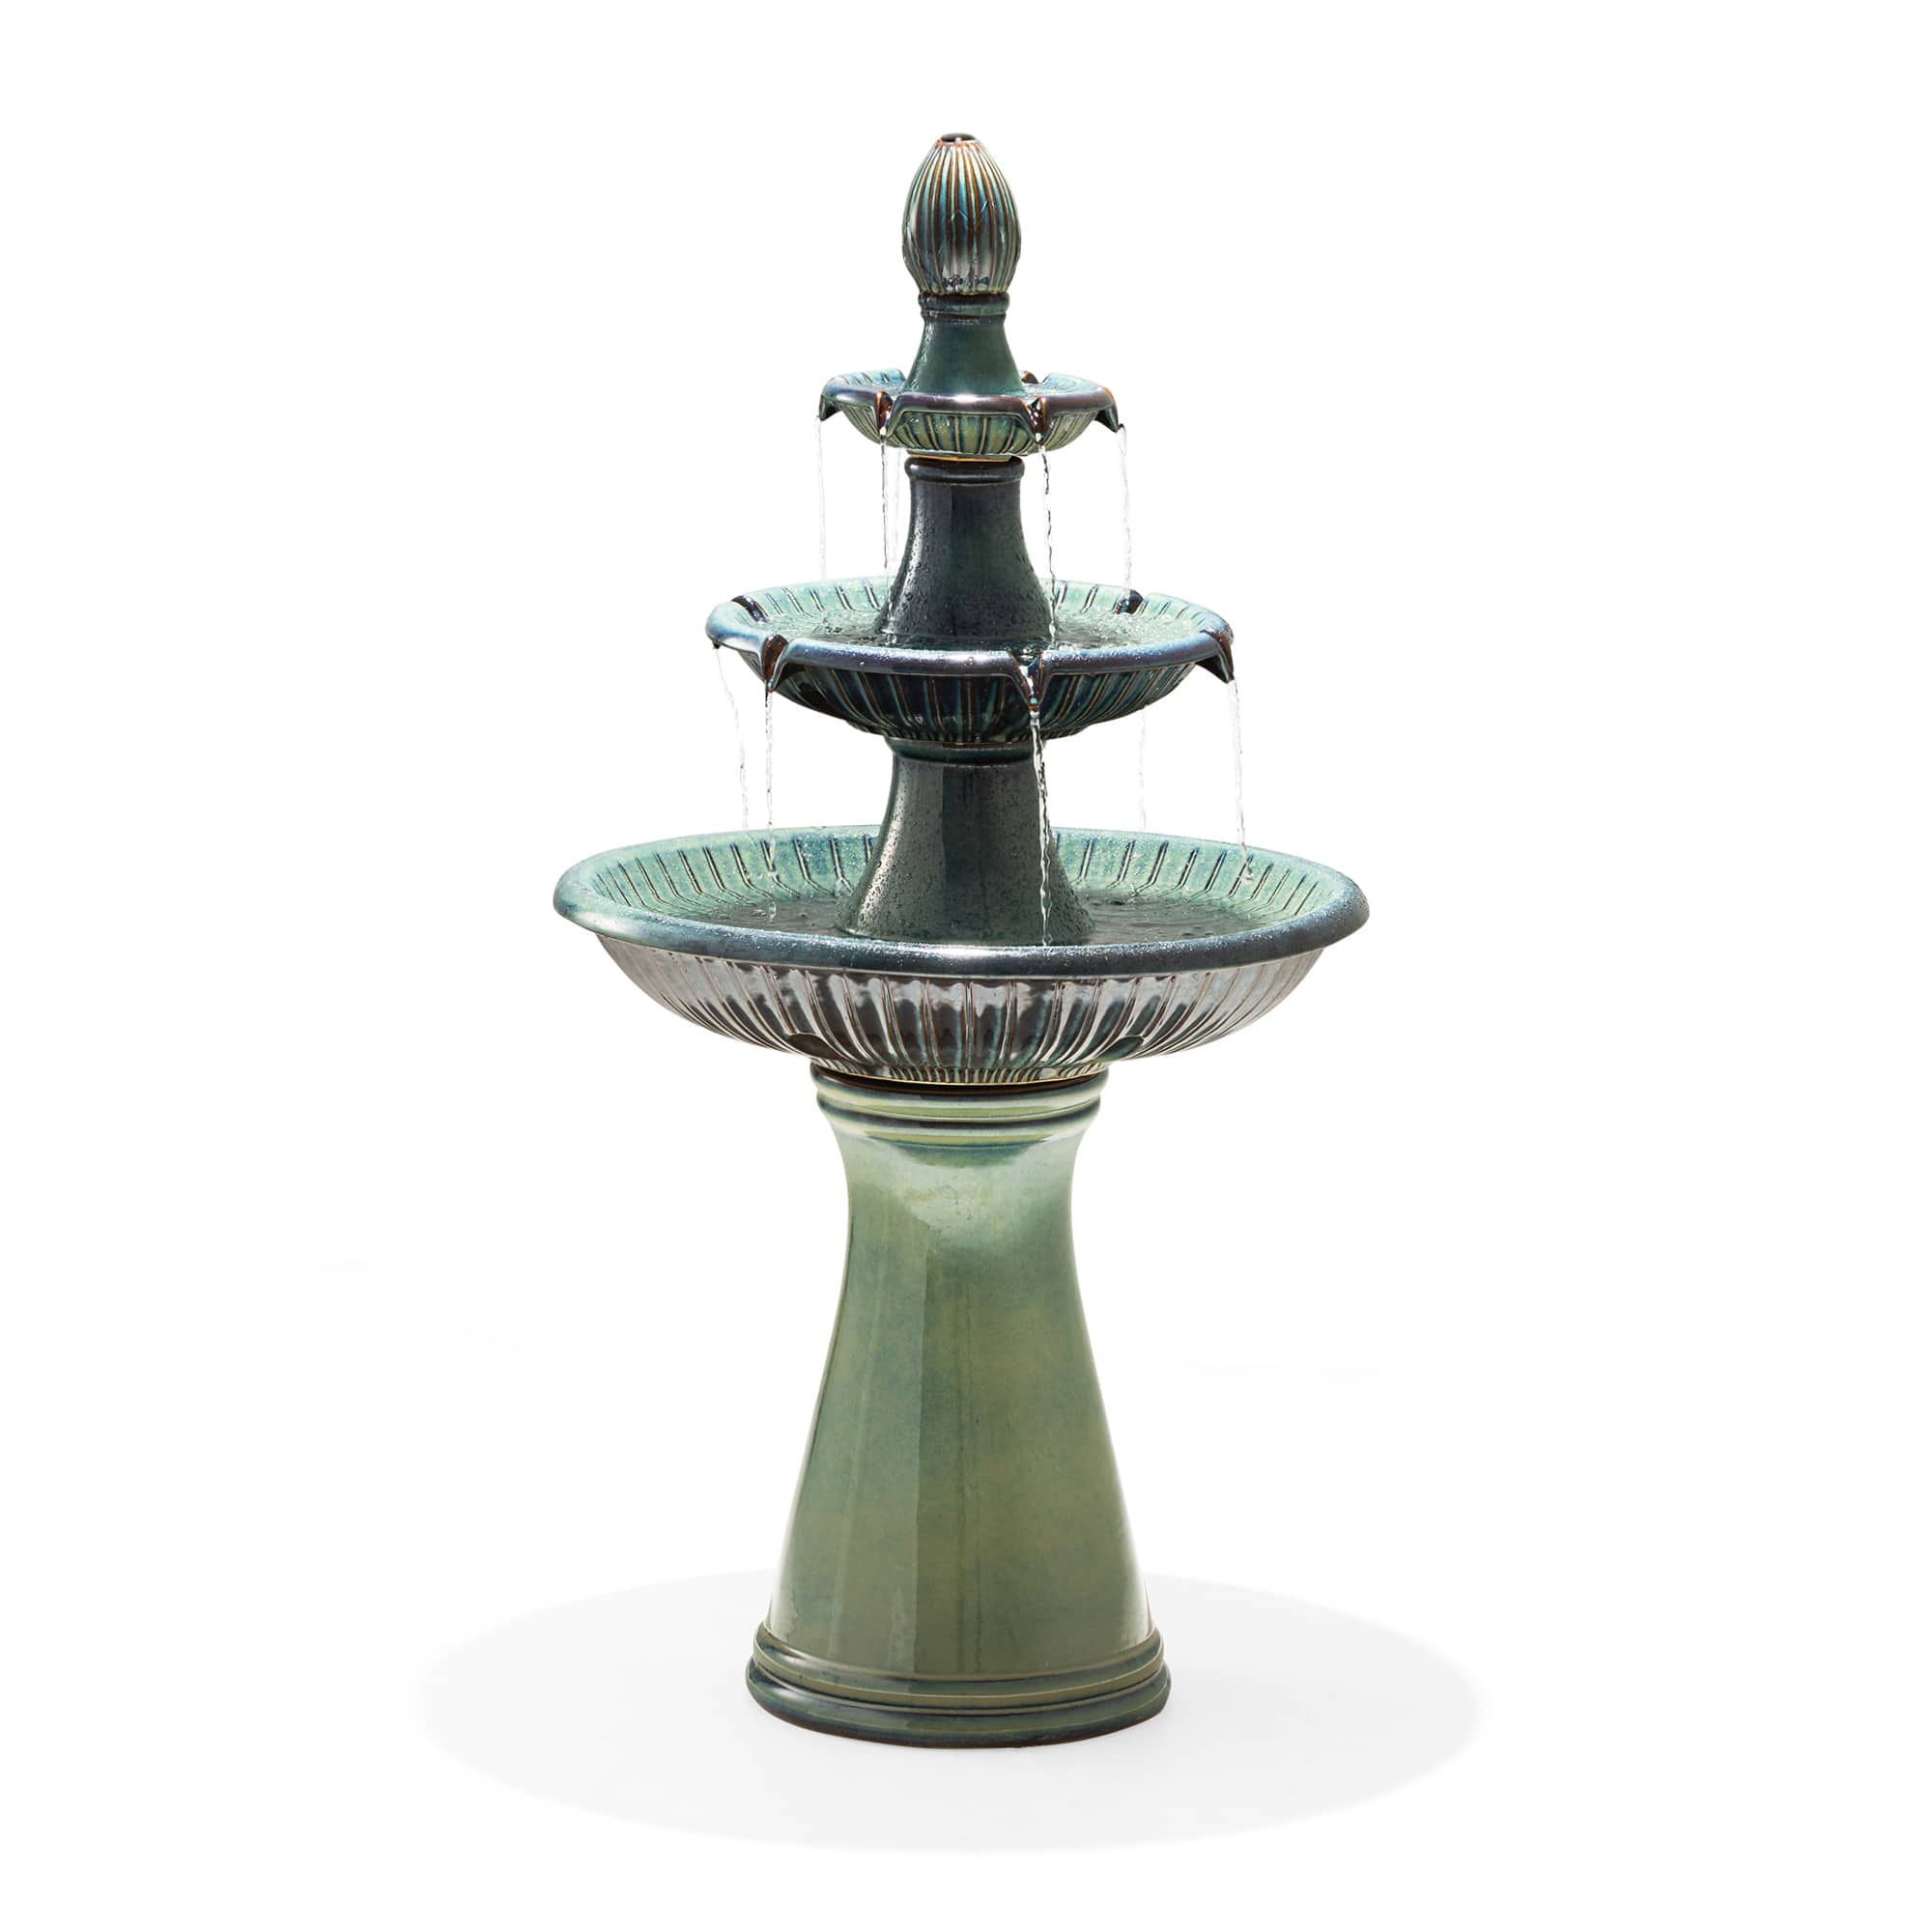 Glitzhome® 45" 3-Tier Ceramic Outdoor Fountain